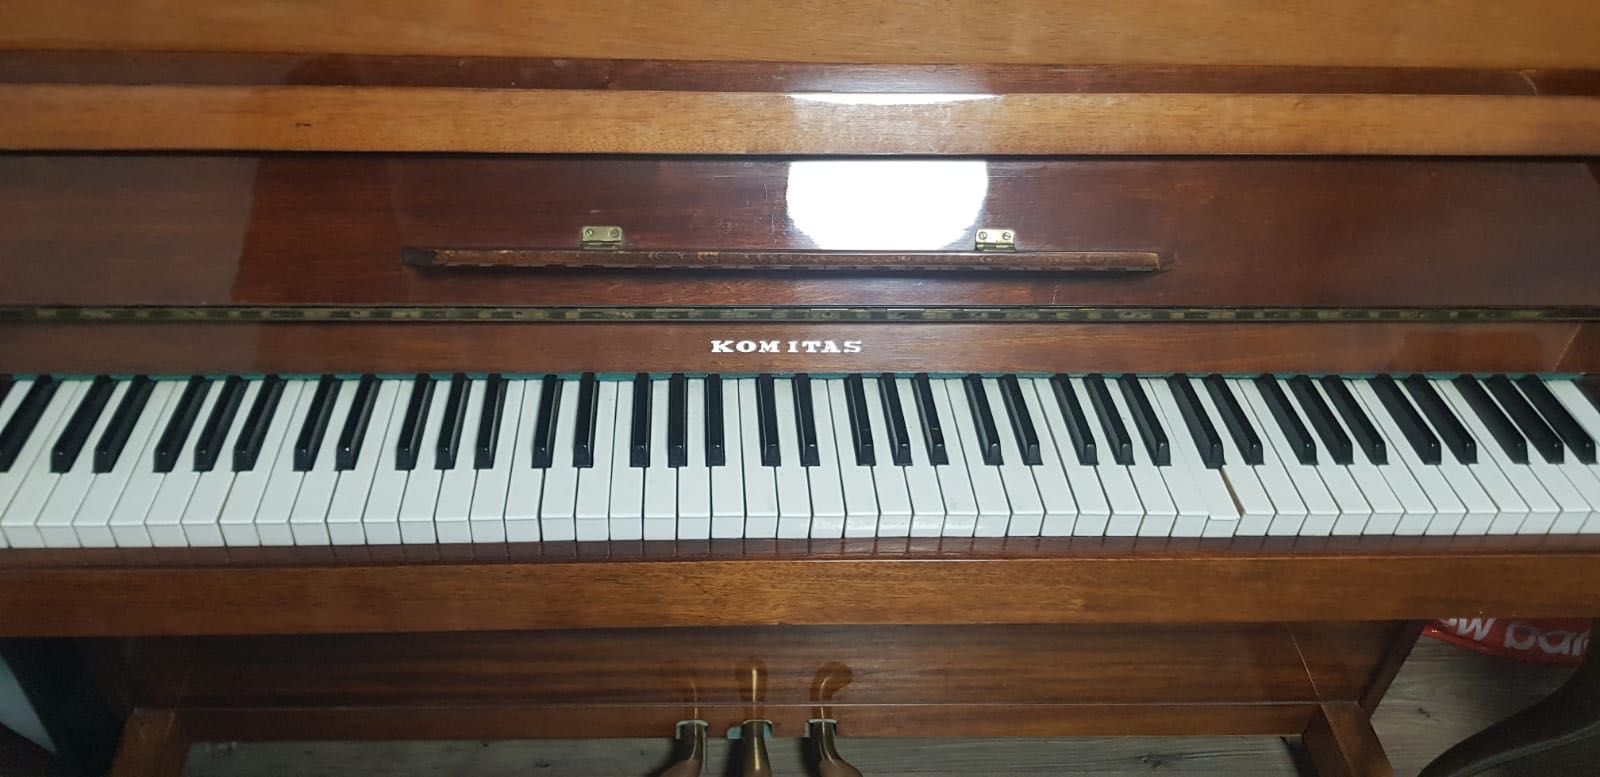 pianino Komitas używane